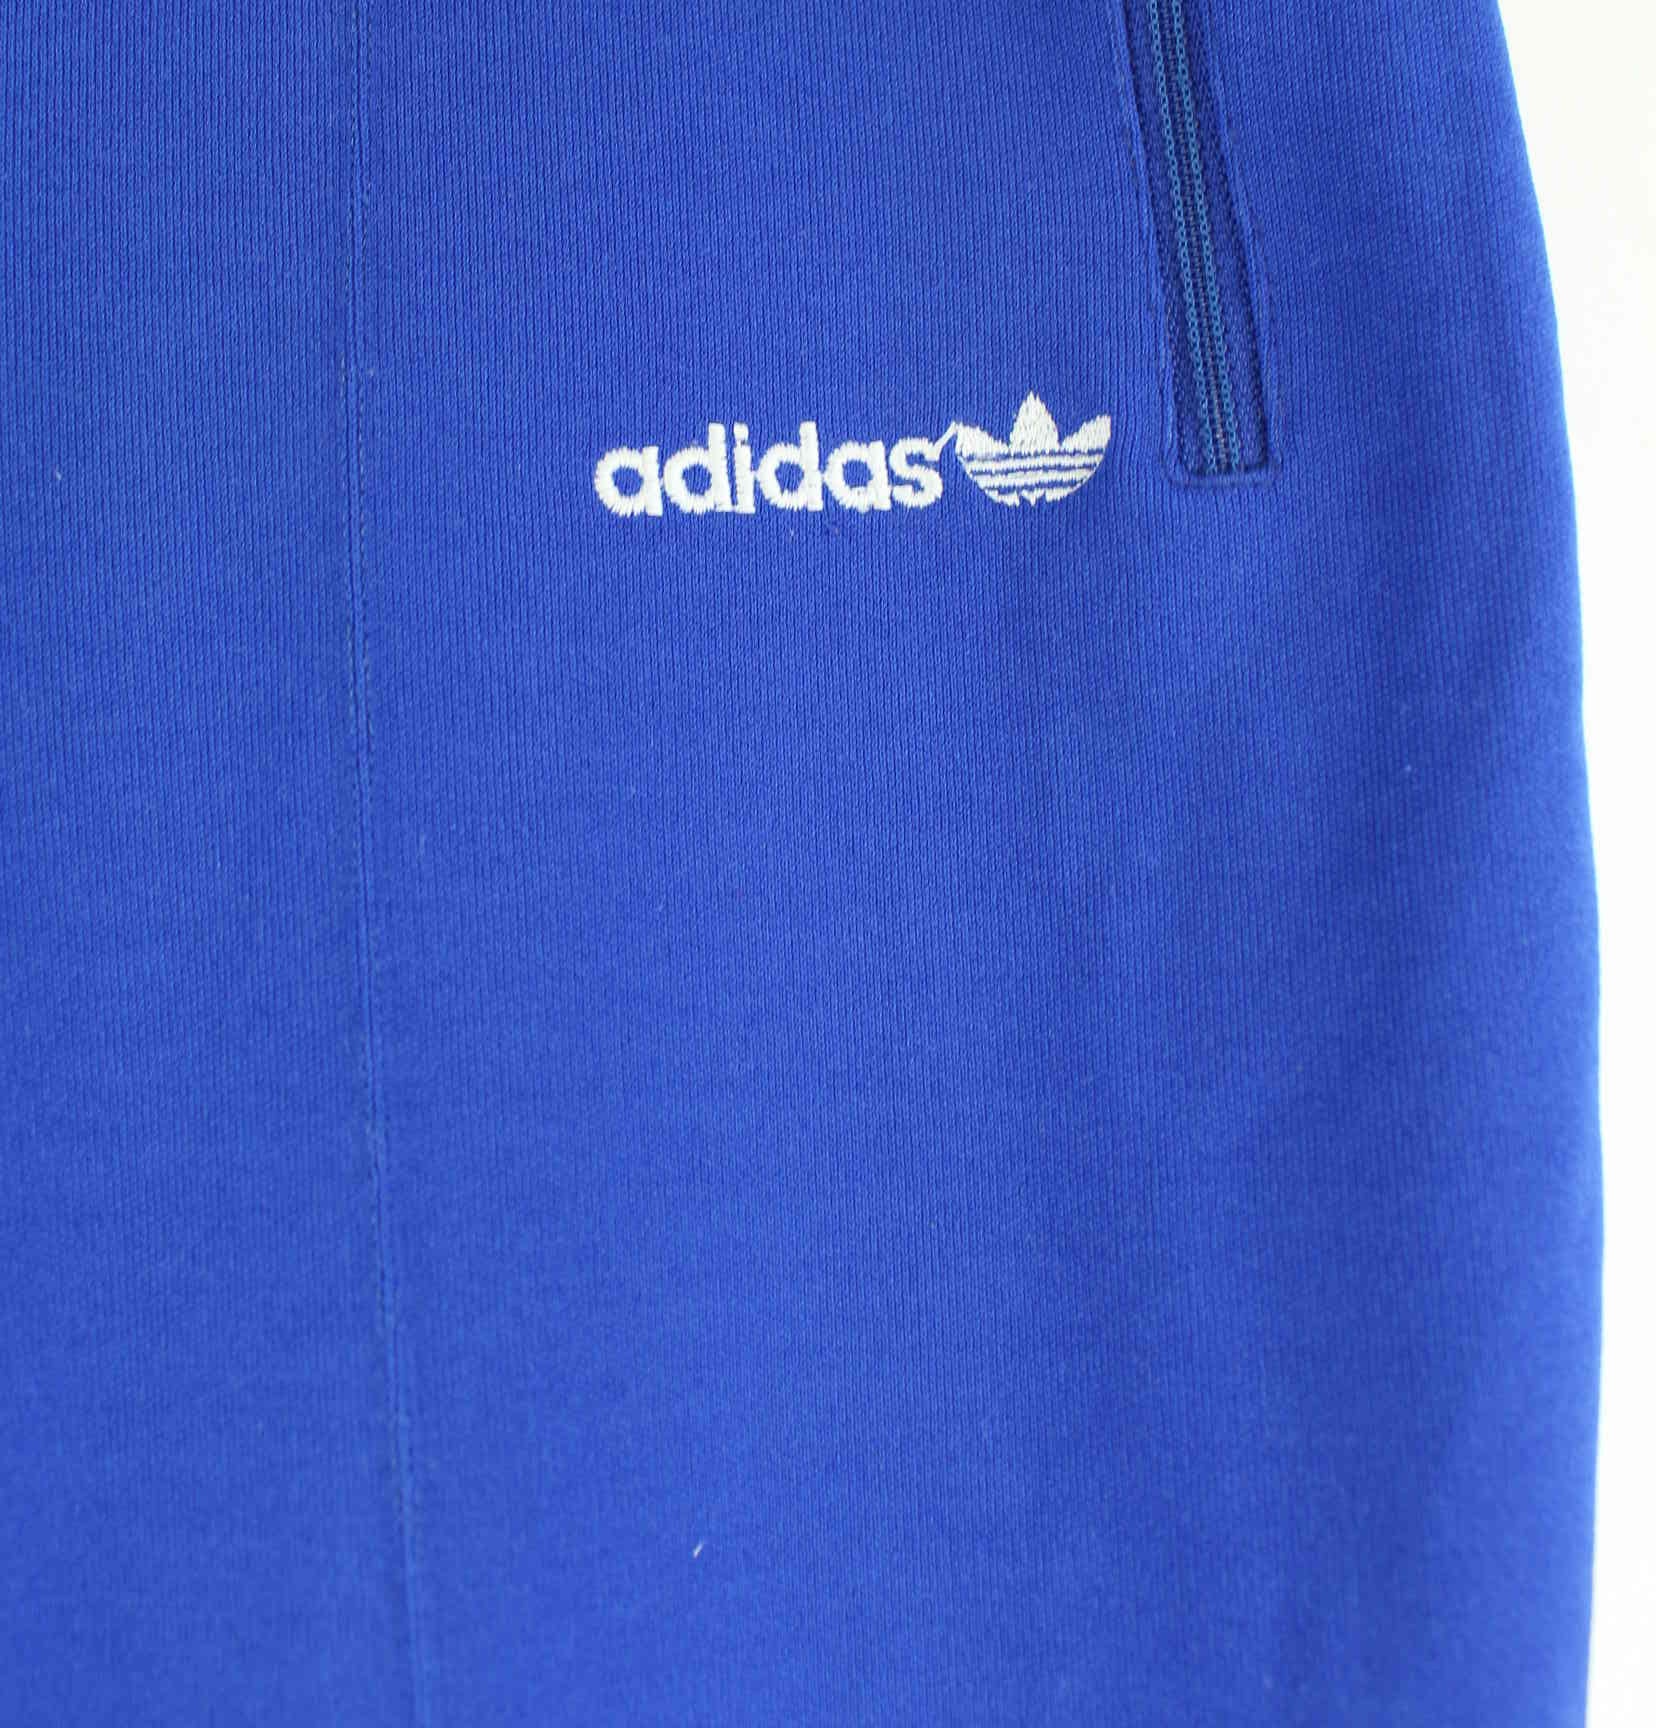 Adidas 90s Vintage Embroidered Track Pants Blau S (detail image 1)